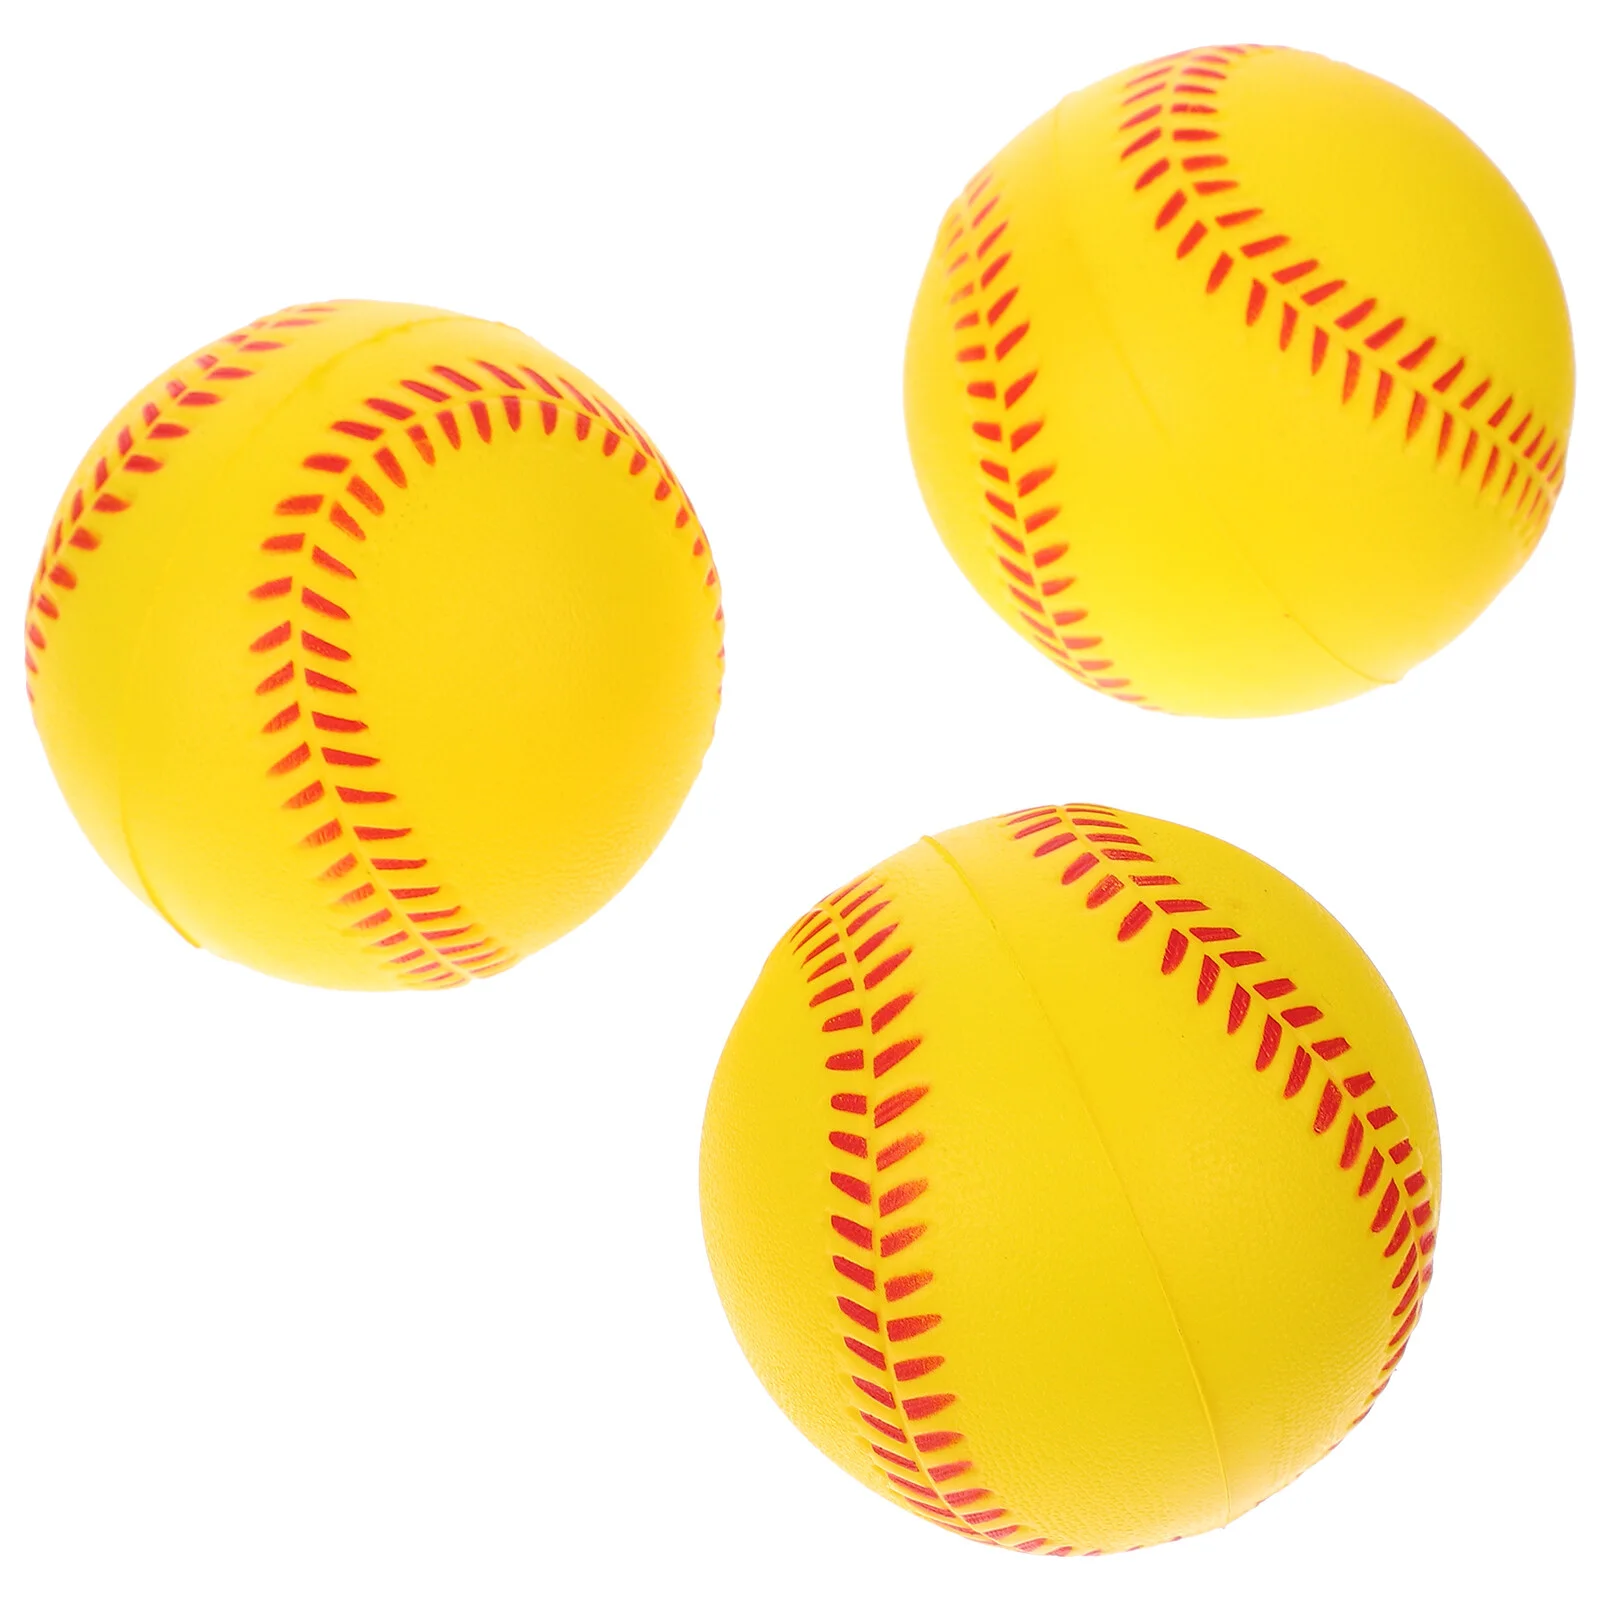 

Тренировочная палочка для практики софтбола полиуретановые пенки бейсбольные соревнования бейсбольные мячи для тренировок детские игрушки